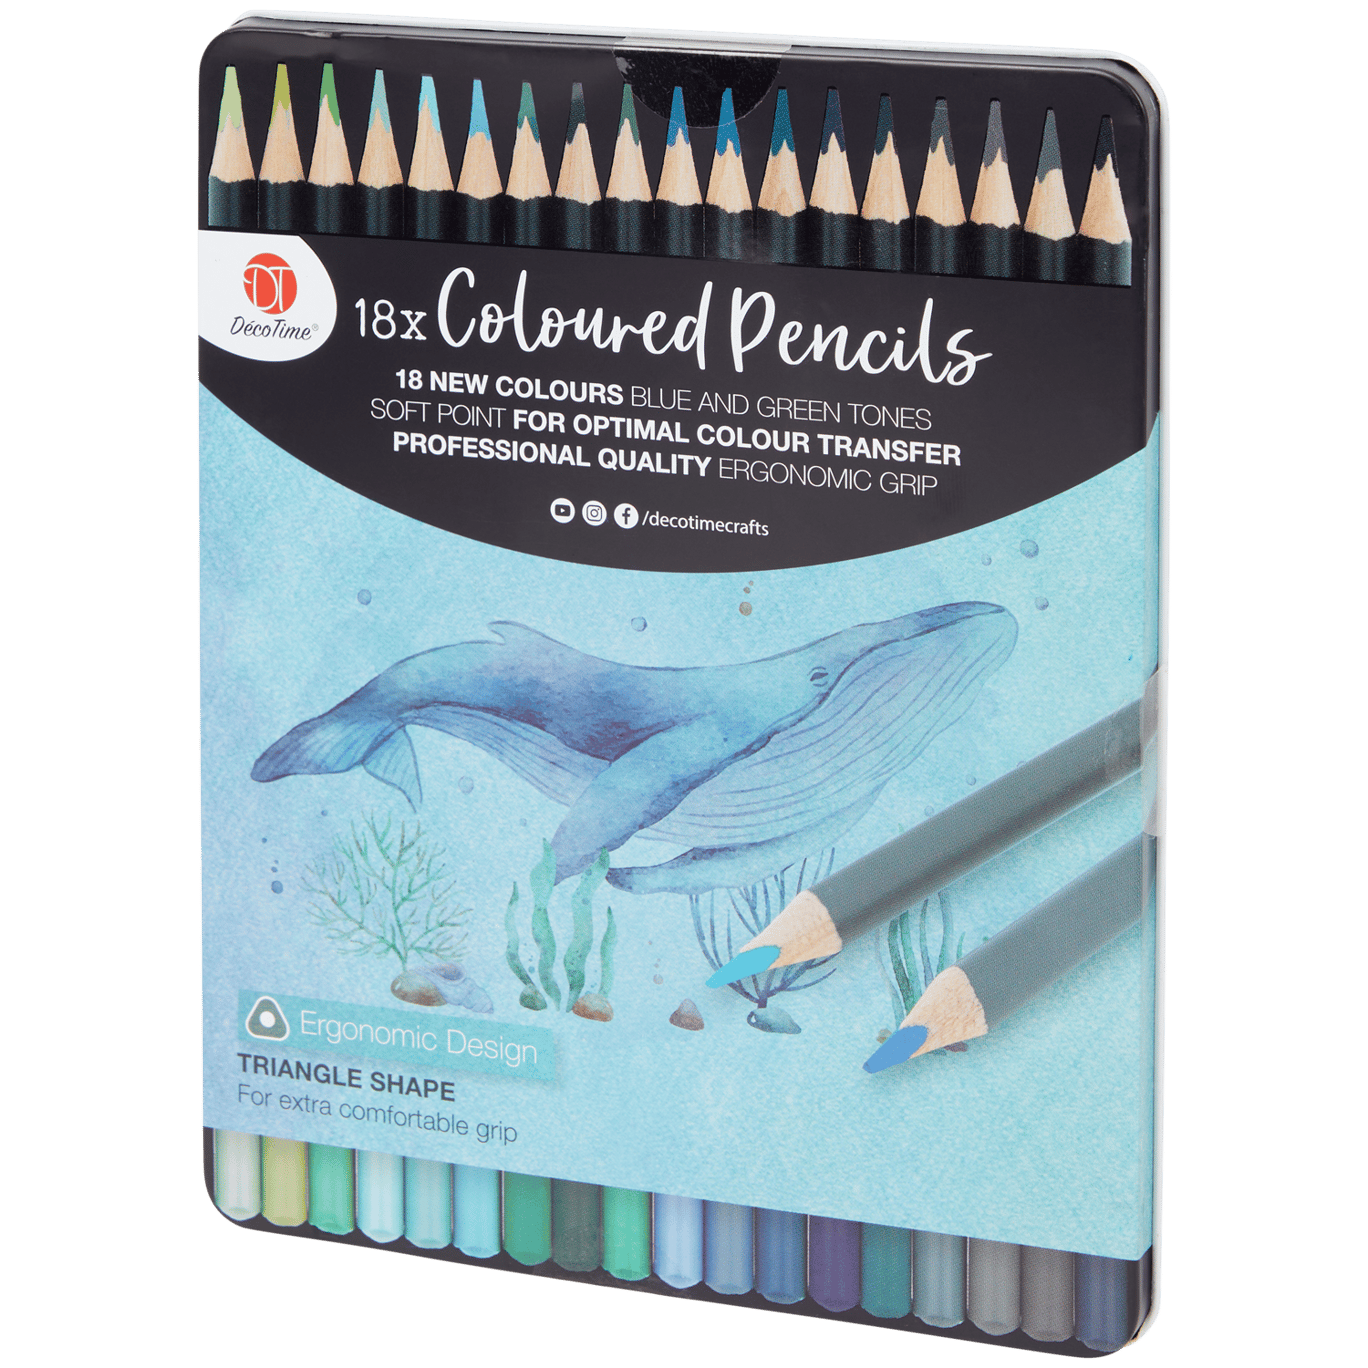 Acheter Marco 12 nouveaux crayons de couleurs Pastel à la mode et